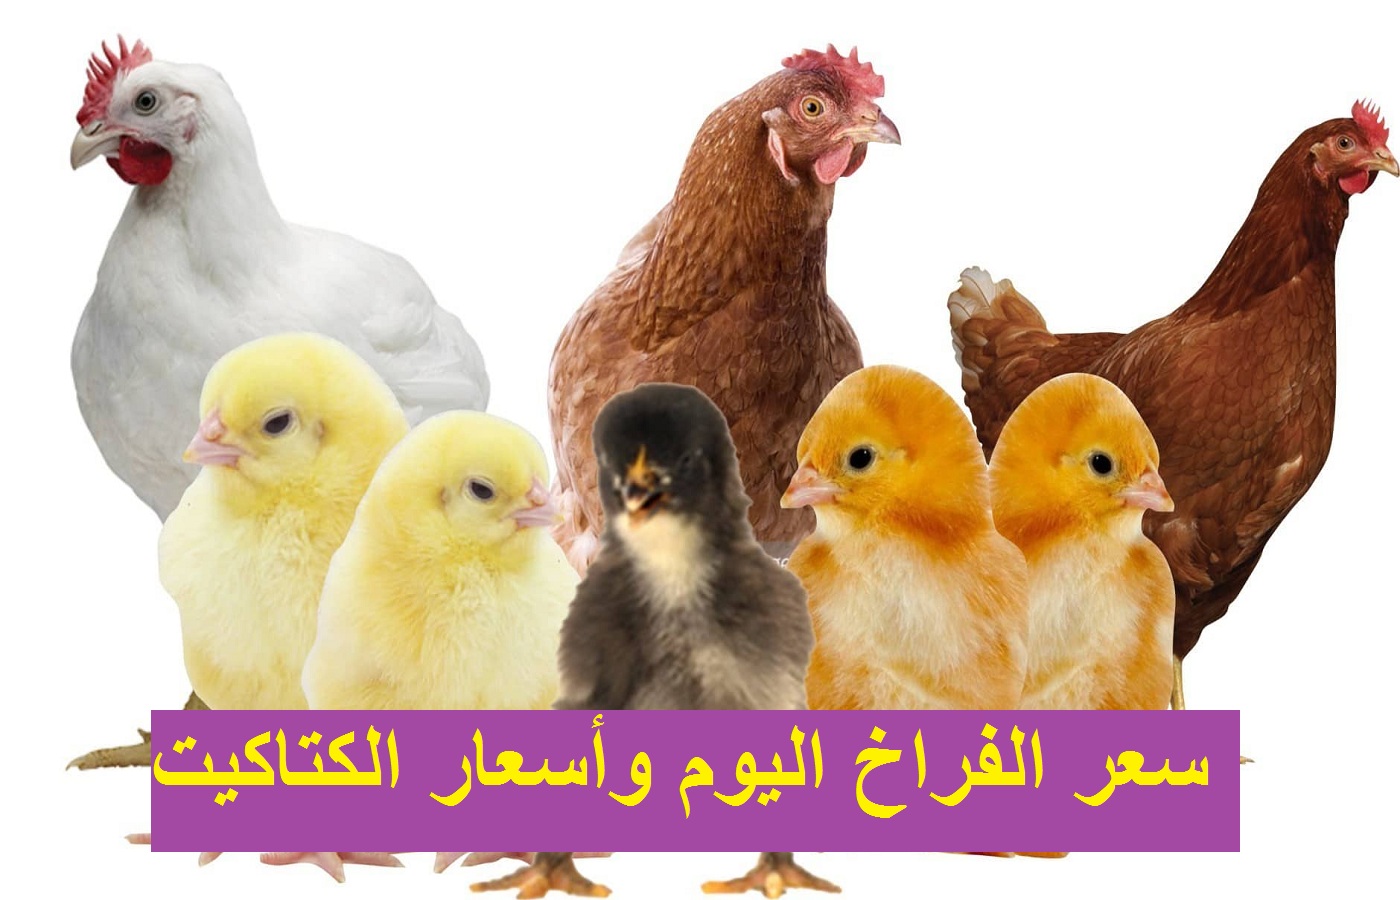 بورصة الدواجن: سعر الفراخ اليوم 27 أكتوبر وسعر الكتكوت الأبيض والبيض